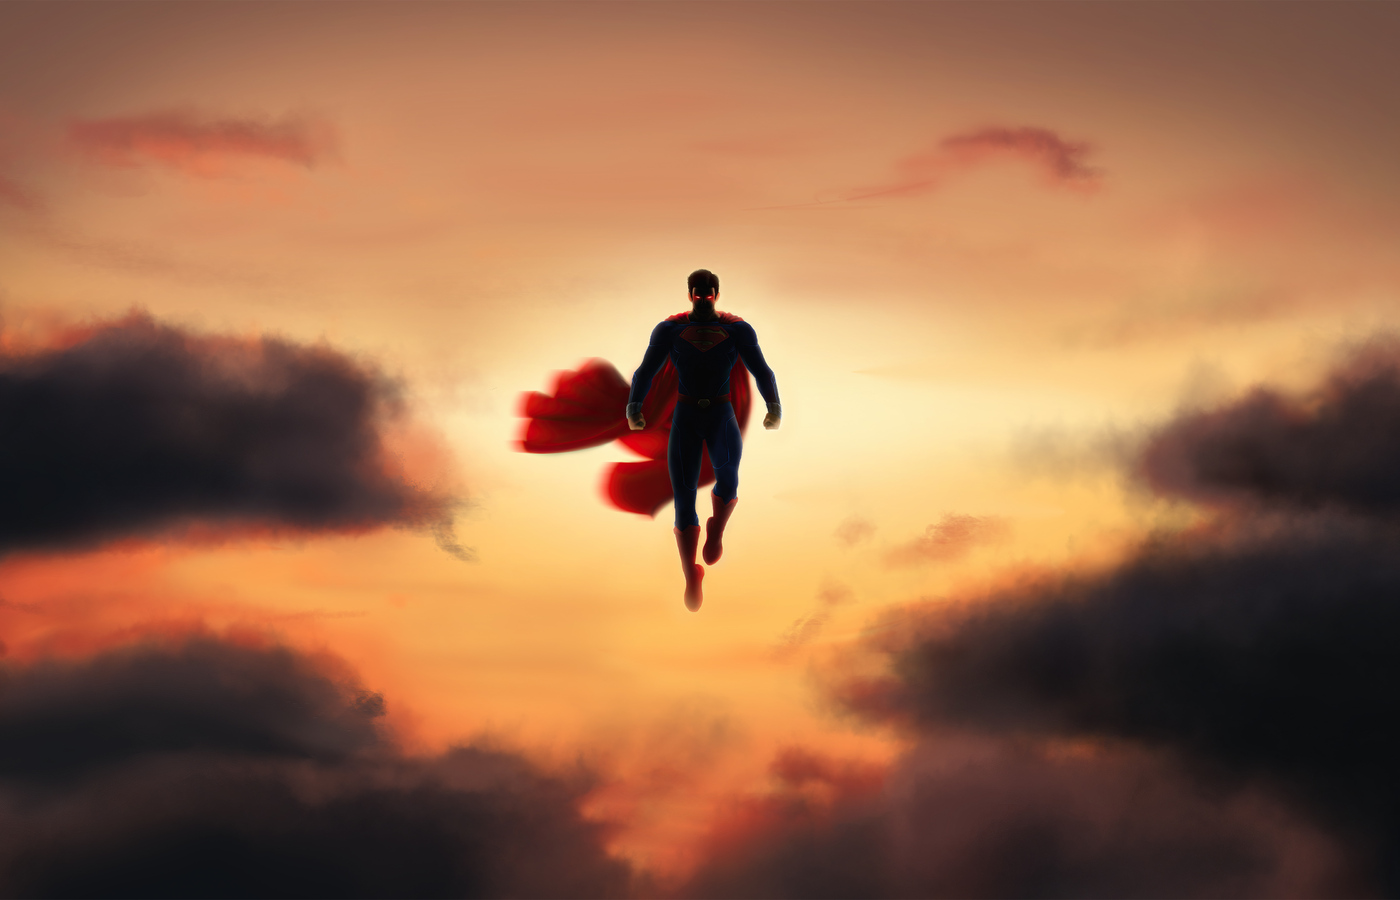 its-superman-mj.jpg